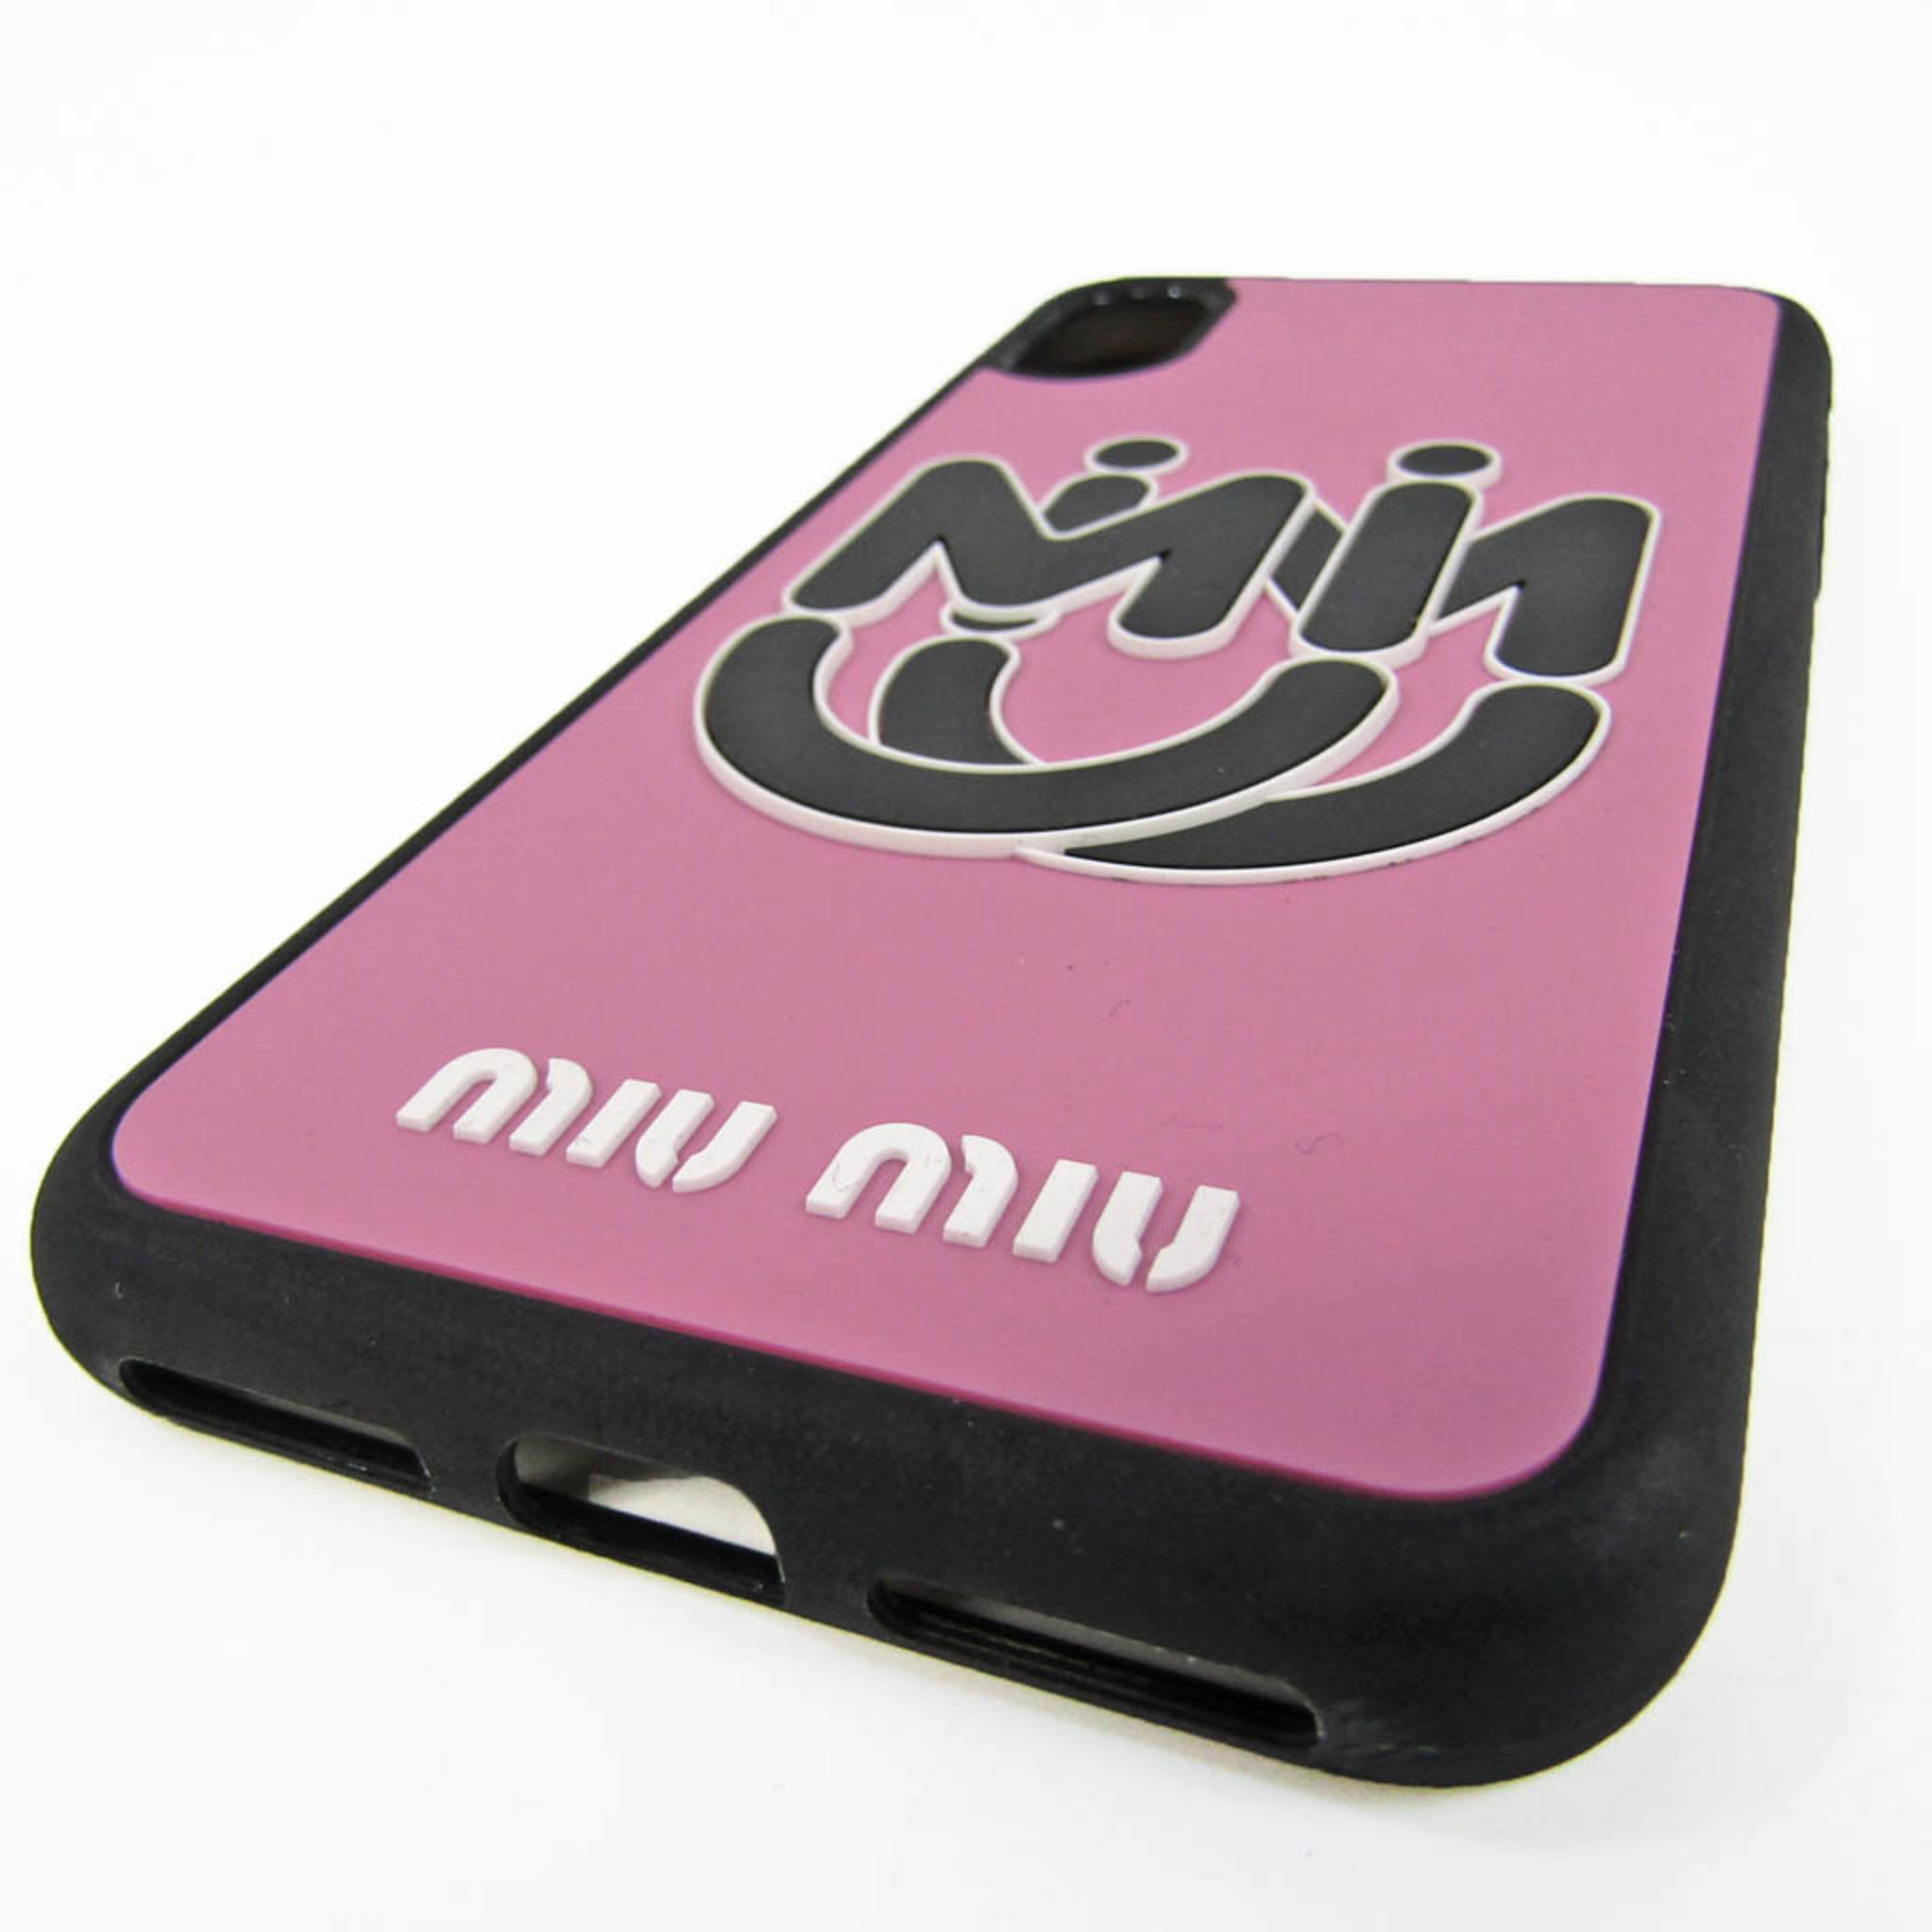 ミュウミュウ(Miu Miu) 5ZH058 ラバー バンパー iPhone X 対応 ブラック,ピンク